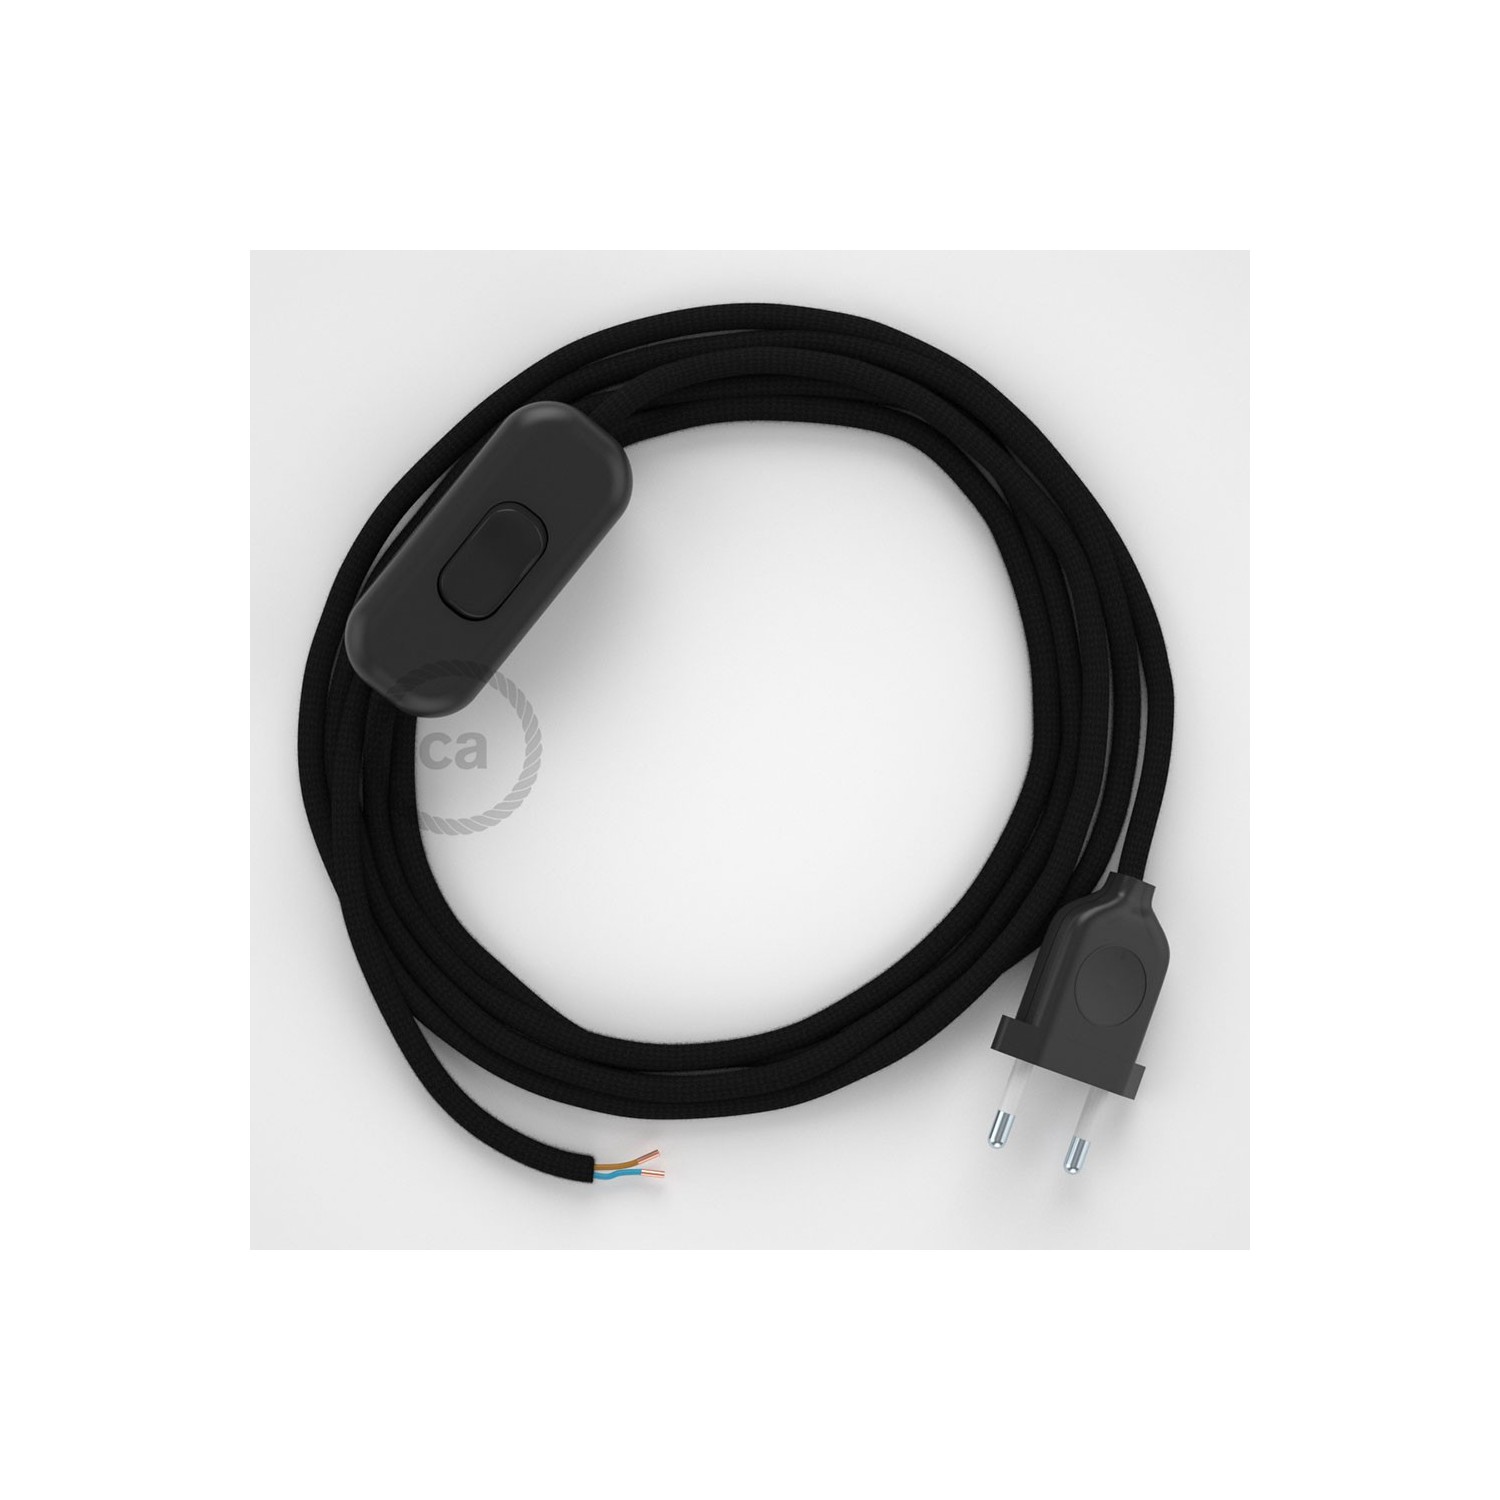 Cableado para lámpara, cable RM04 Efecto Seda Negro 1,8m. Elige tu el color de la clavija y del interruptor!